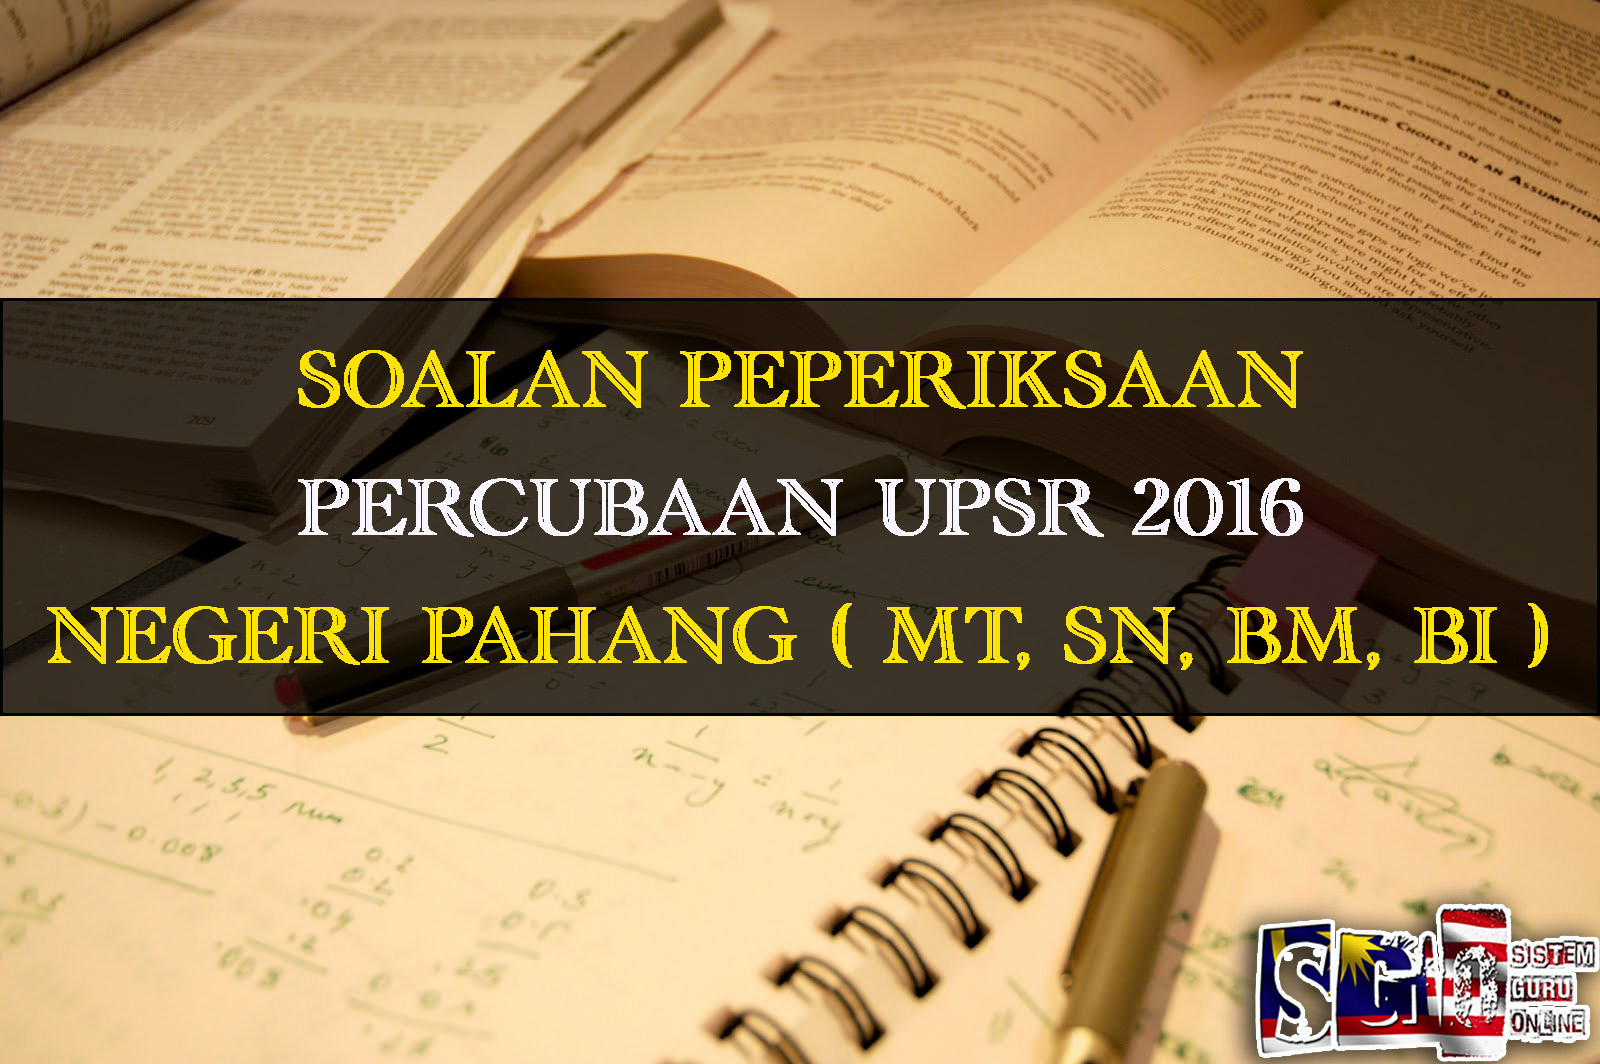 Soalan Percubaan UPSR 2016 Negeri Pahang Subjek Matematik Kertas 1 dan